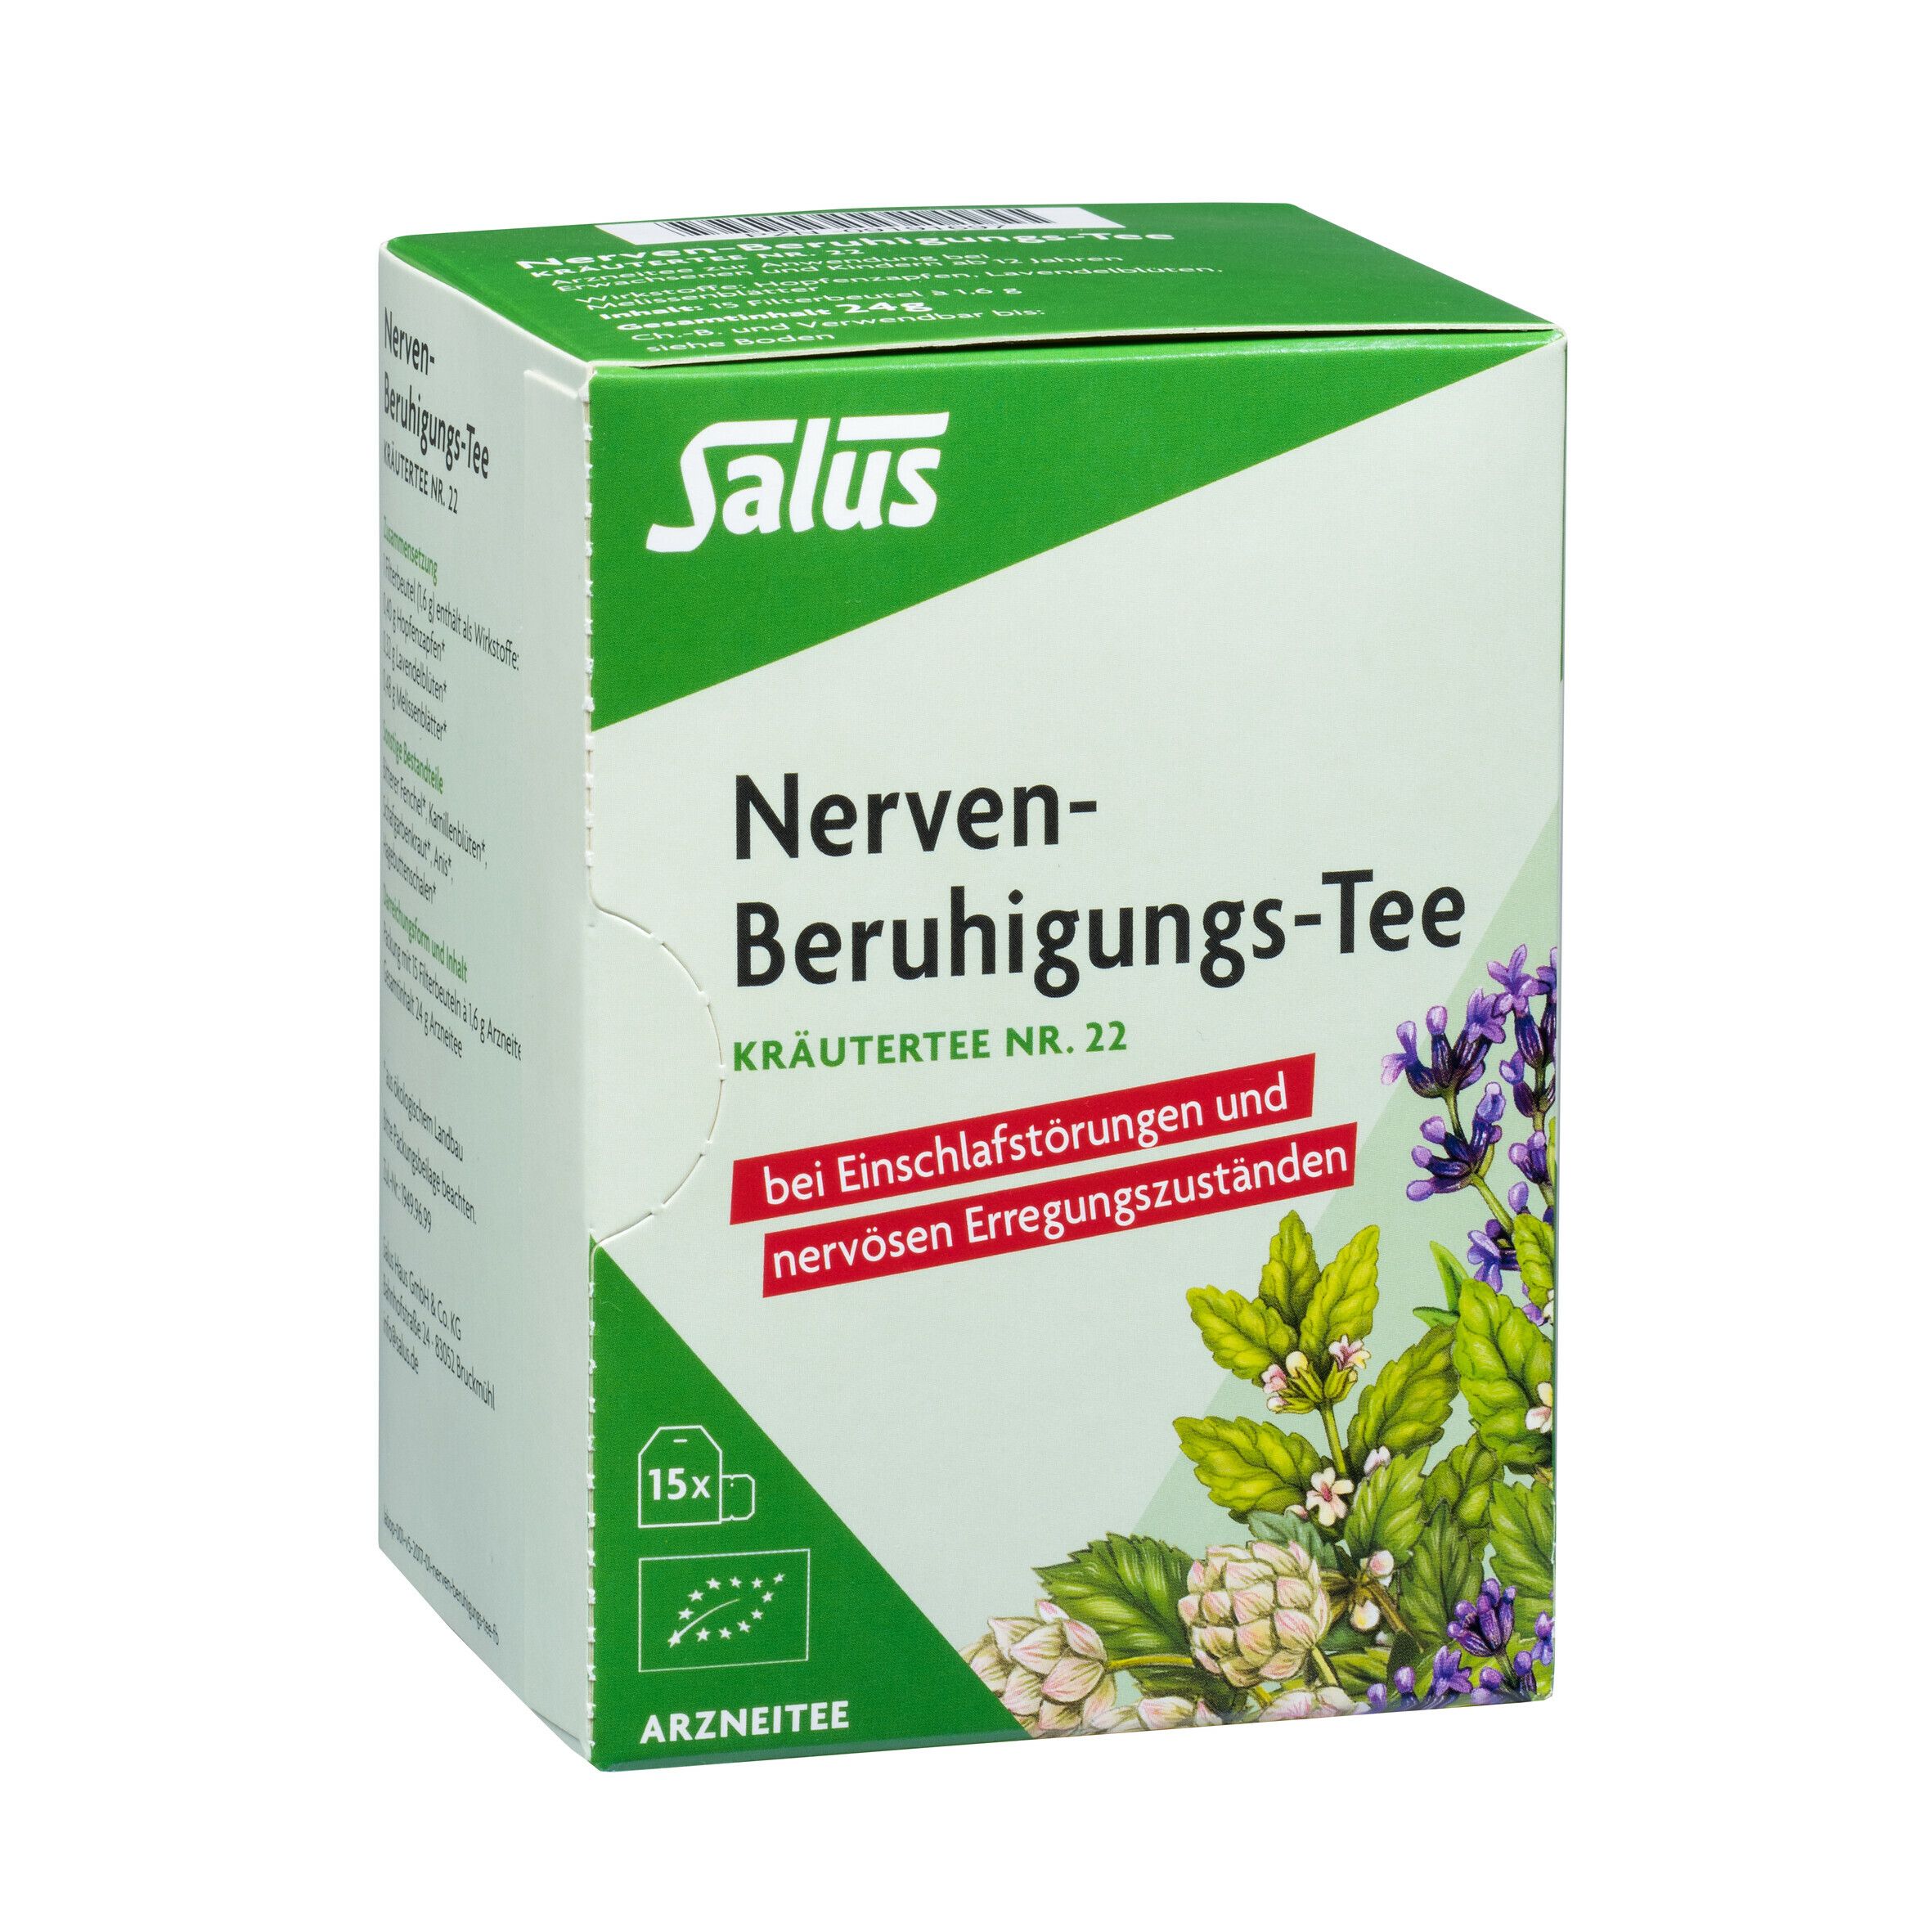 Salus® Nerven-Beruhigungstee Kräutertee NR. 22